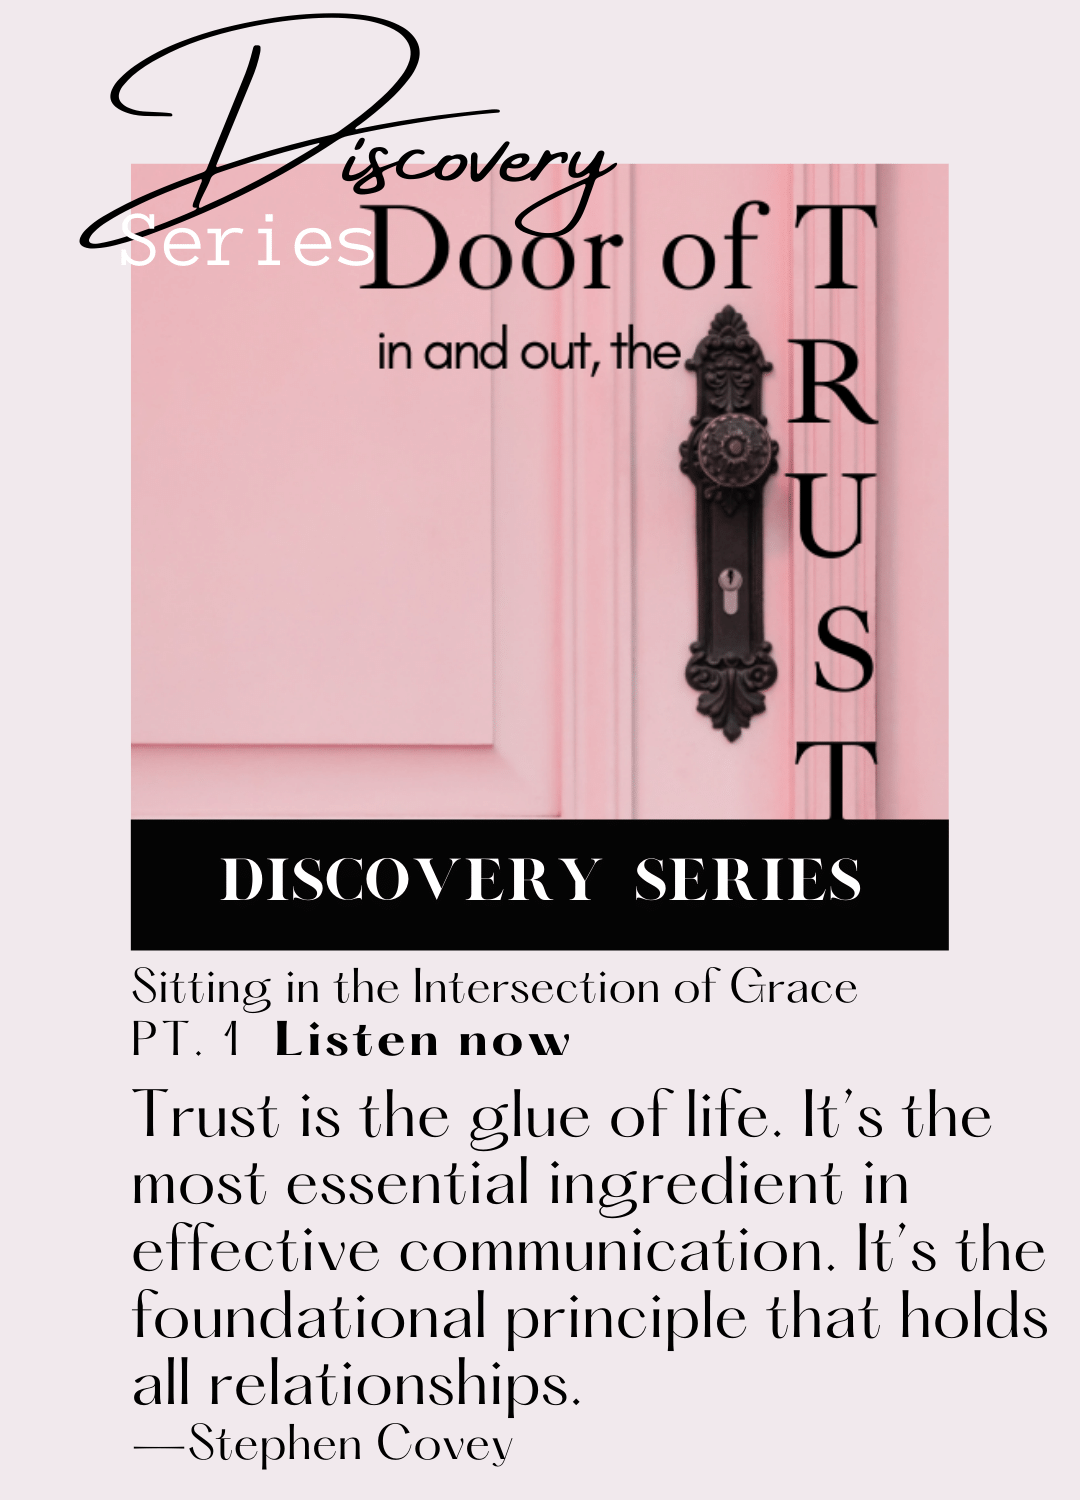 Door of Trust episode 